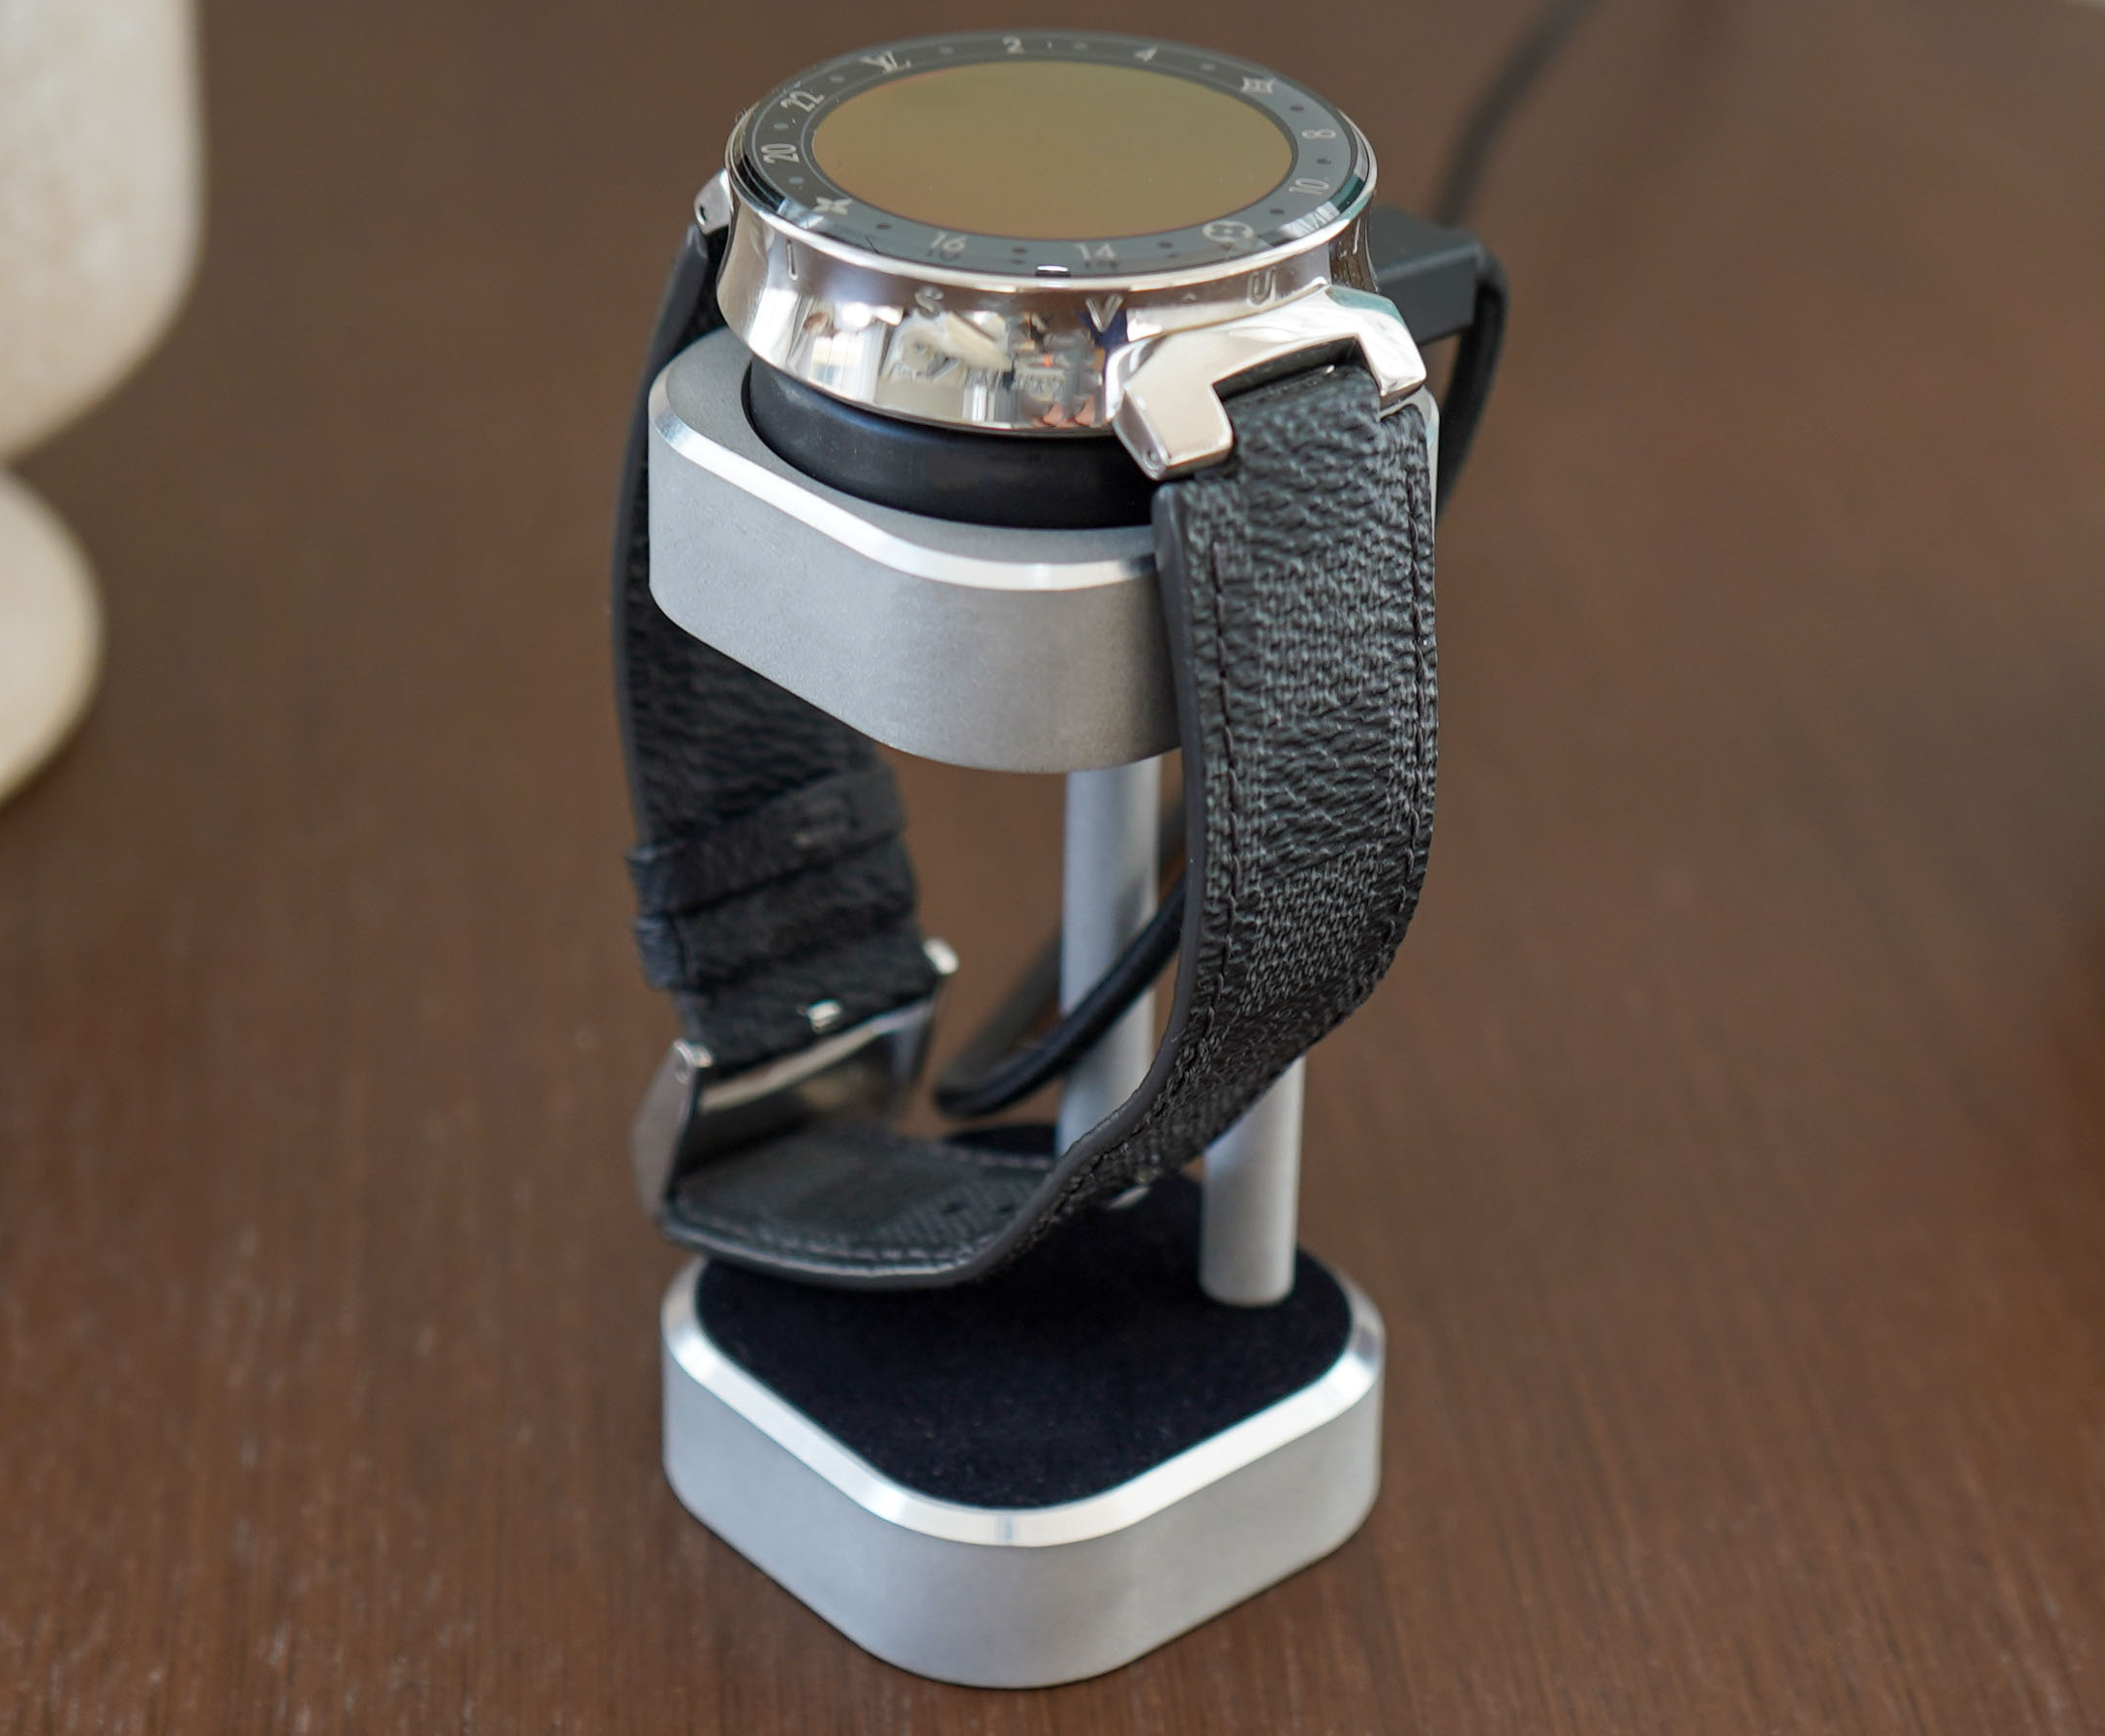 Smartwatch Louis Vuitton tambour Horizon support de charge sans fil combo